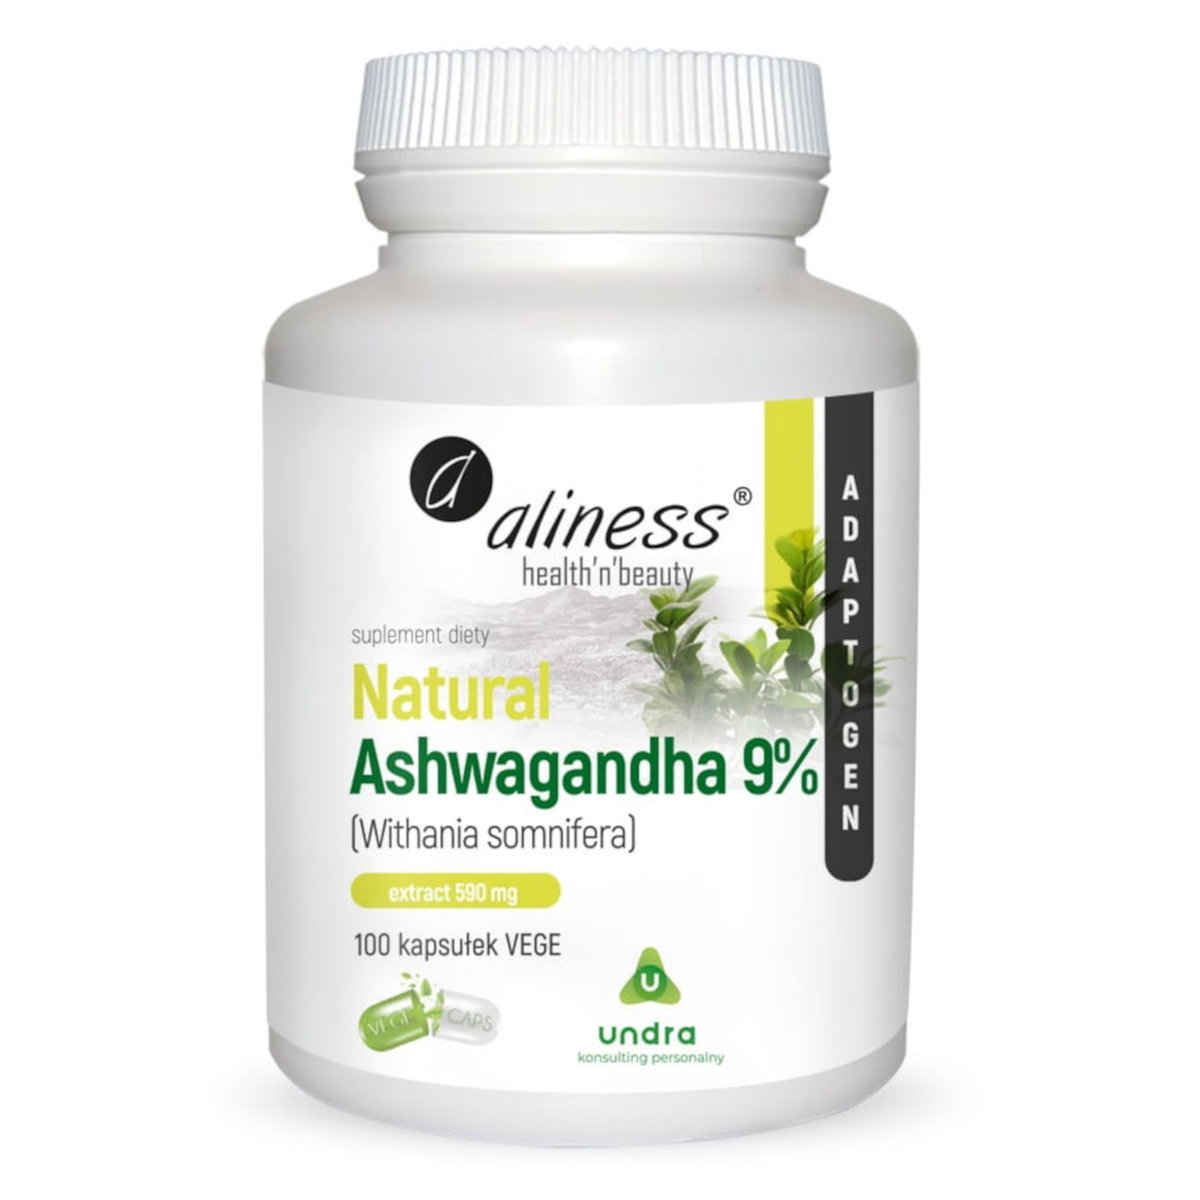 Zdjęcia - Witaminy i składniki mineralne Aliness Ashwagandha 9 Extract 590 mg Suplement diety, 100 kaps. VEGE 